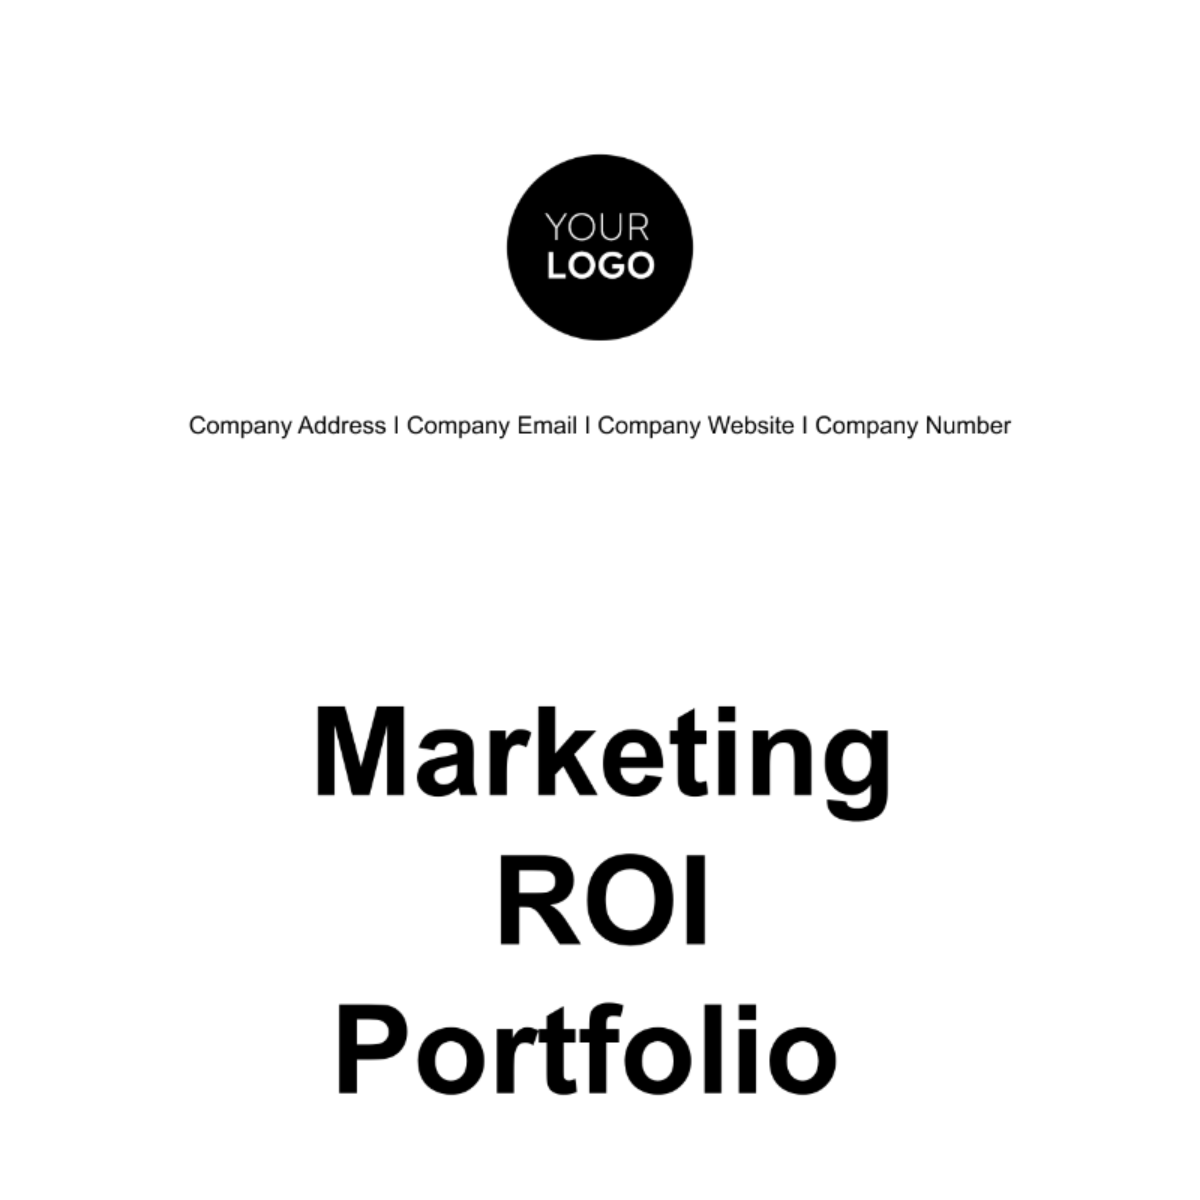 Marketing ROI Portfolio Template